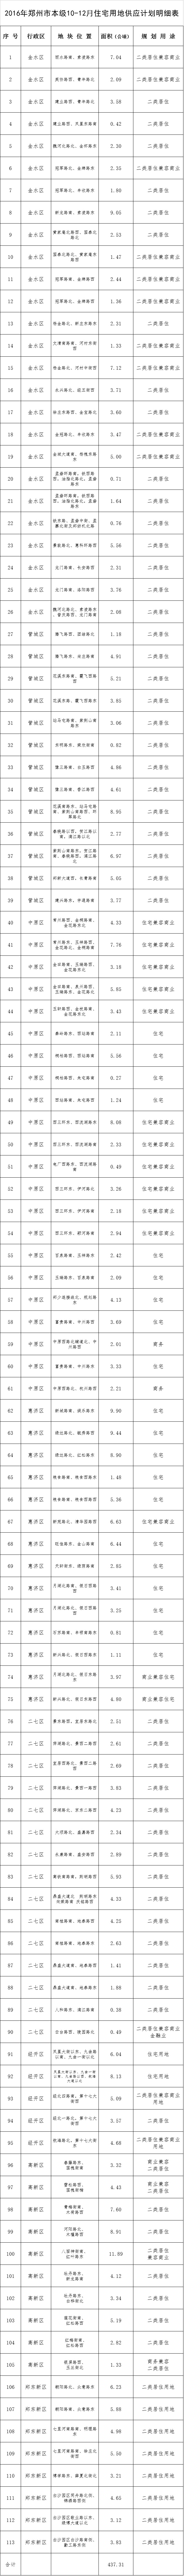 郑州市10-12月住宅用地供应计划预公告（第一批）